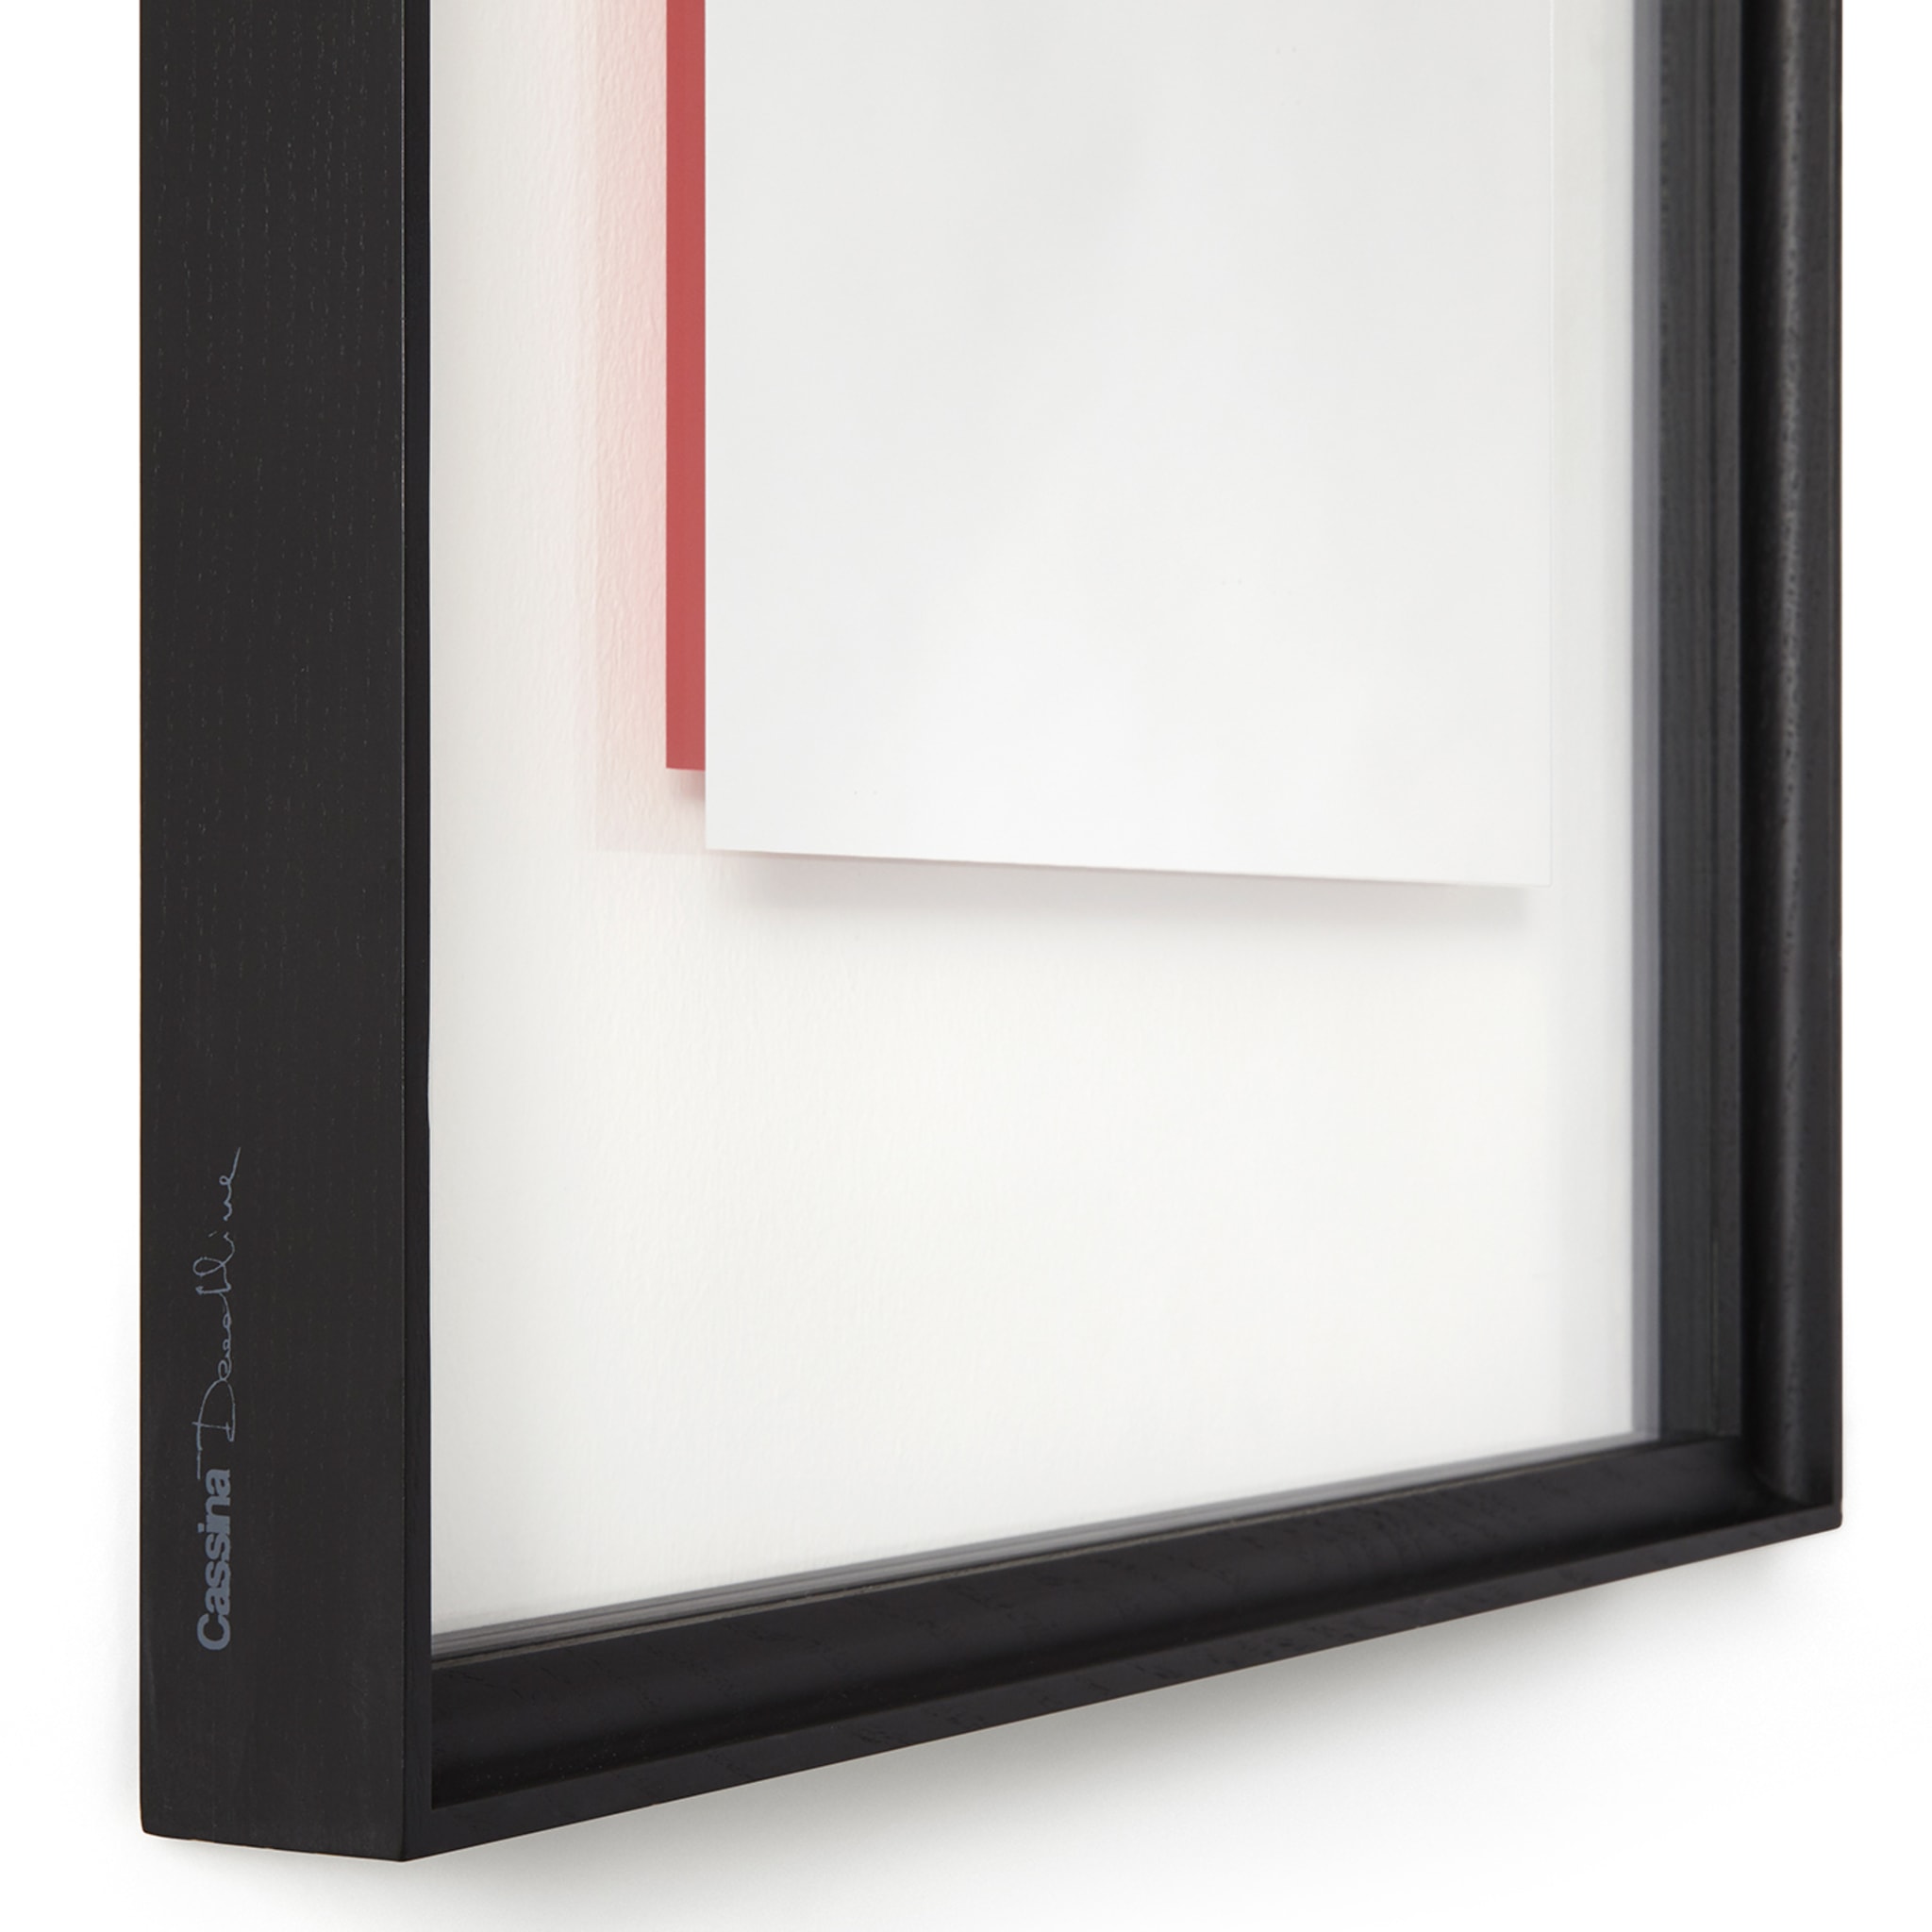 Deadline Who's Afraid of Red Rectangular mirror von Ron Gilad #2 - Alternative Ansicht 1